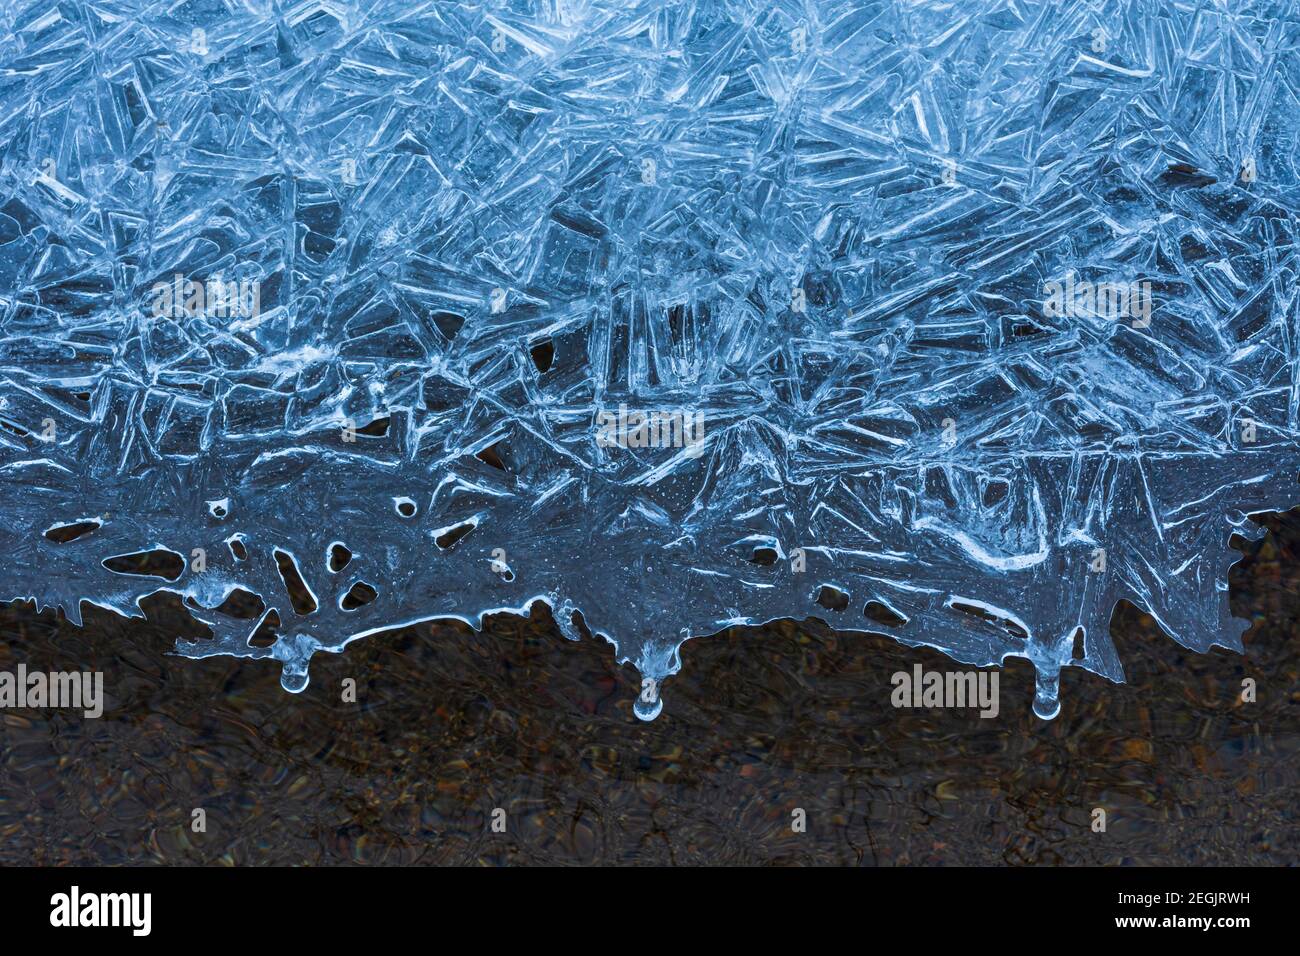 Einzigartige Muster in Eis gebildet, mit einer gefrorenen Schicht über klarem fließendem Wasser von East Plum Creek, Castle Rock Colorado USA. Foto aufgenommen im Februar. Stockfoto